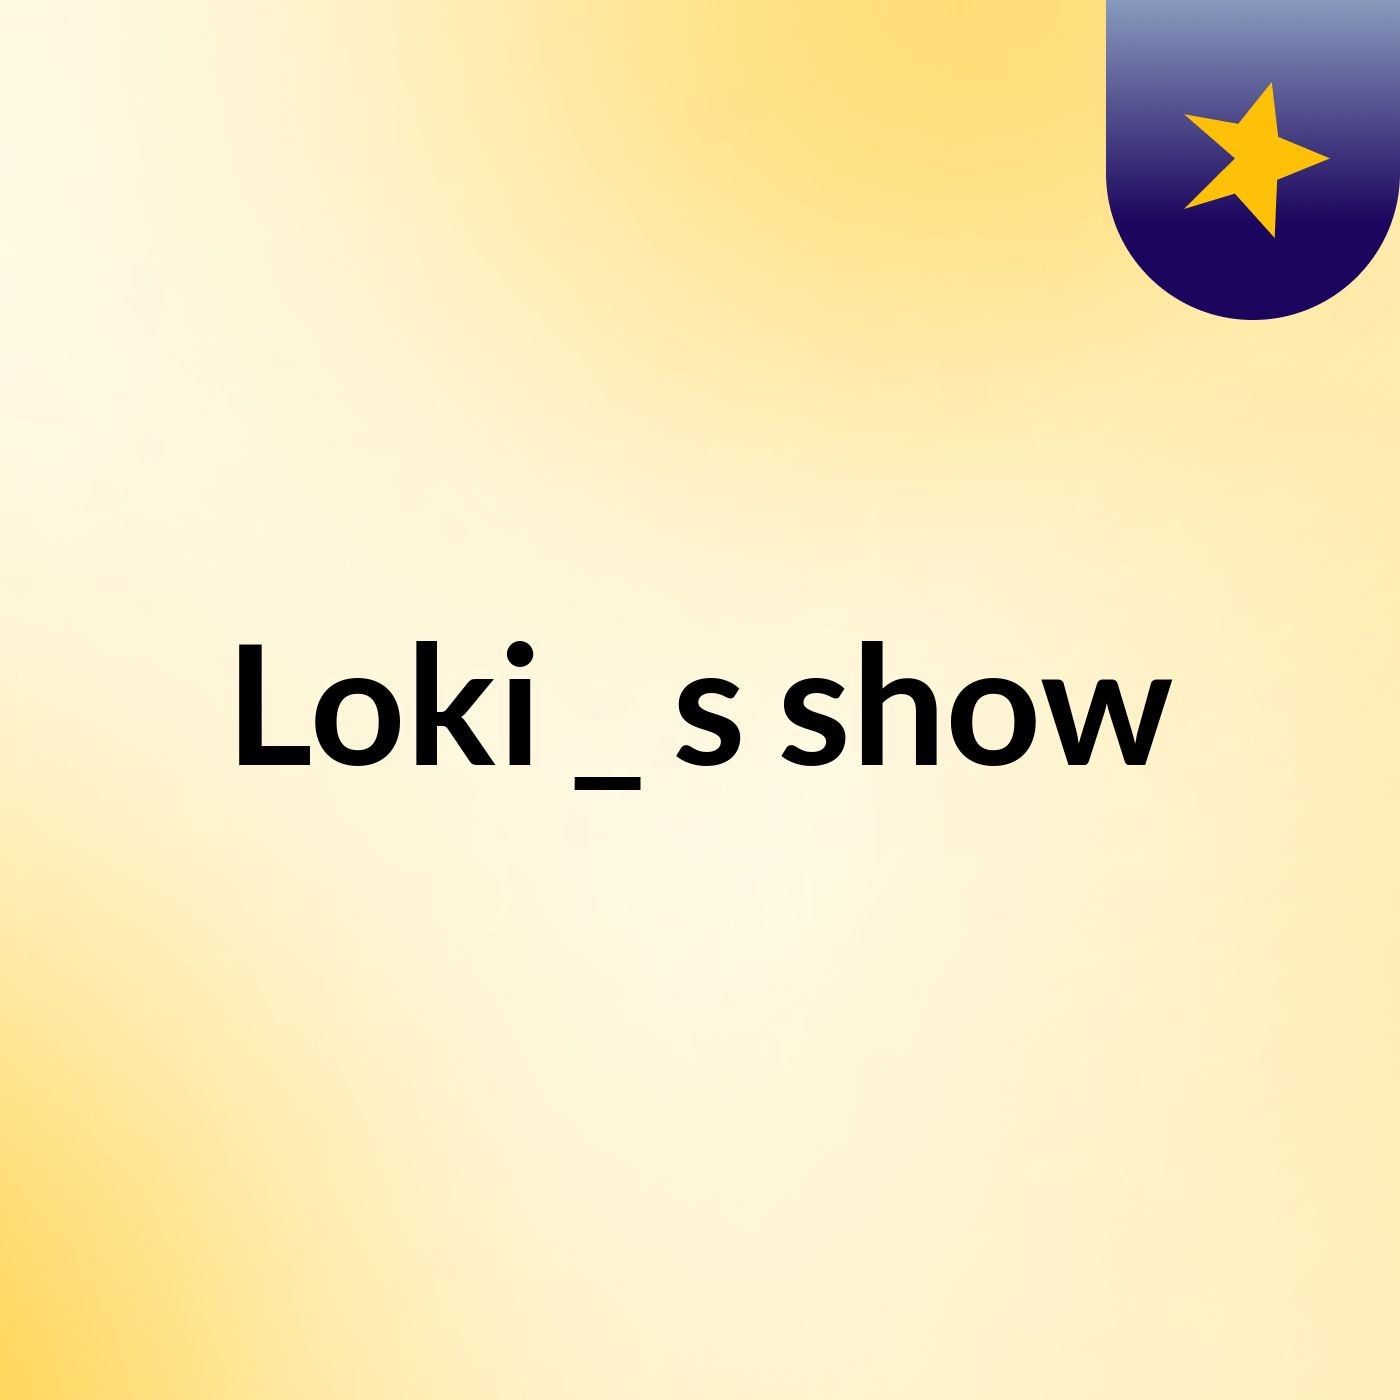 Loki _'s show